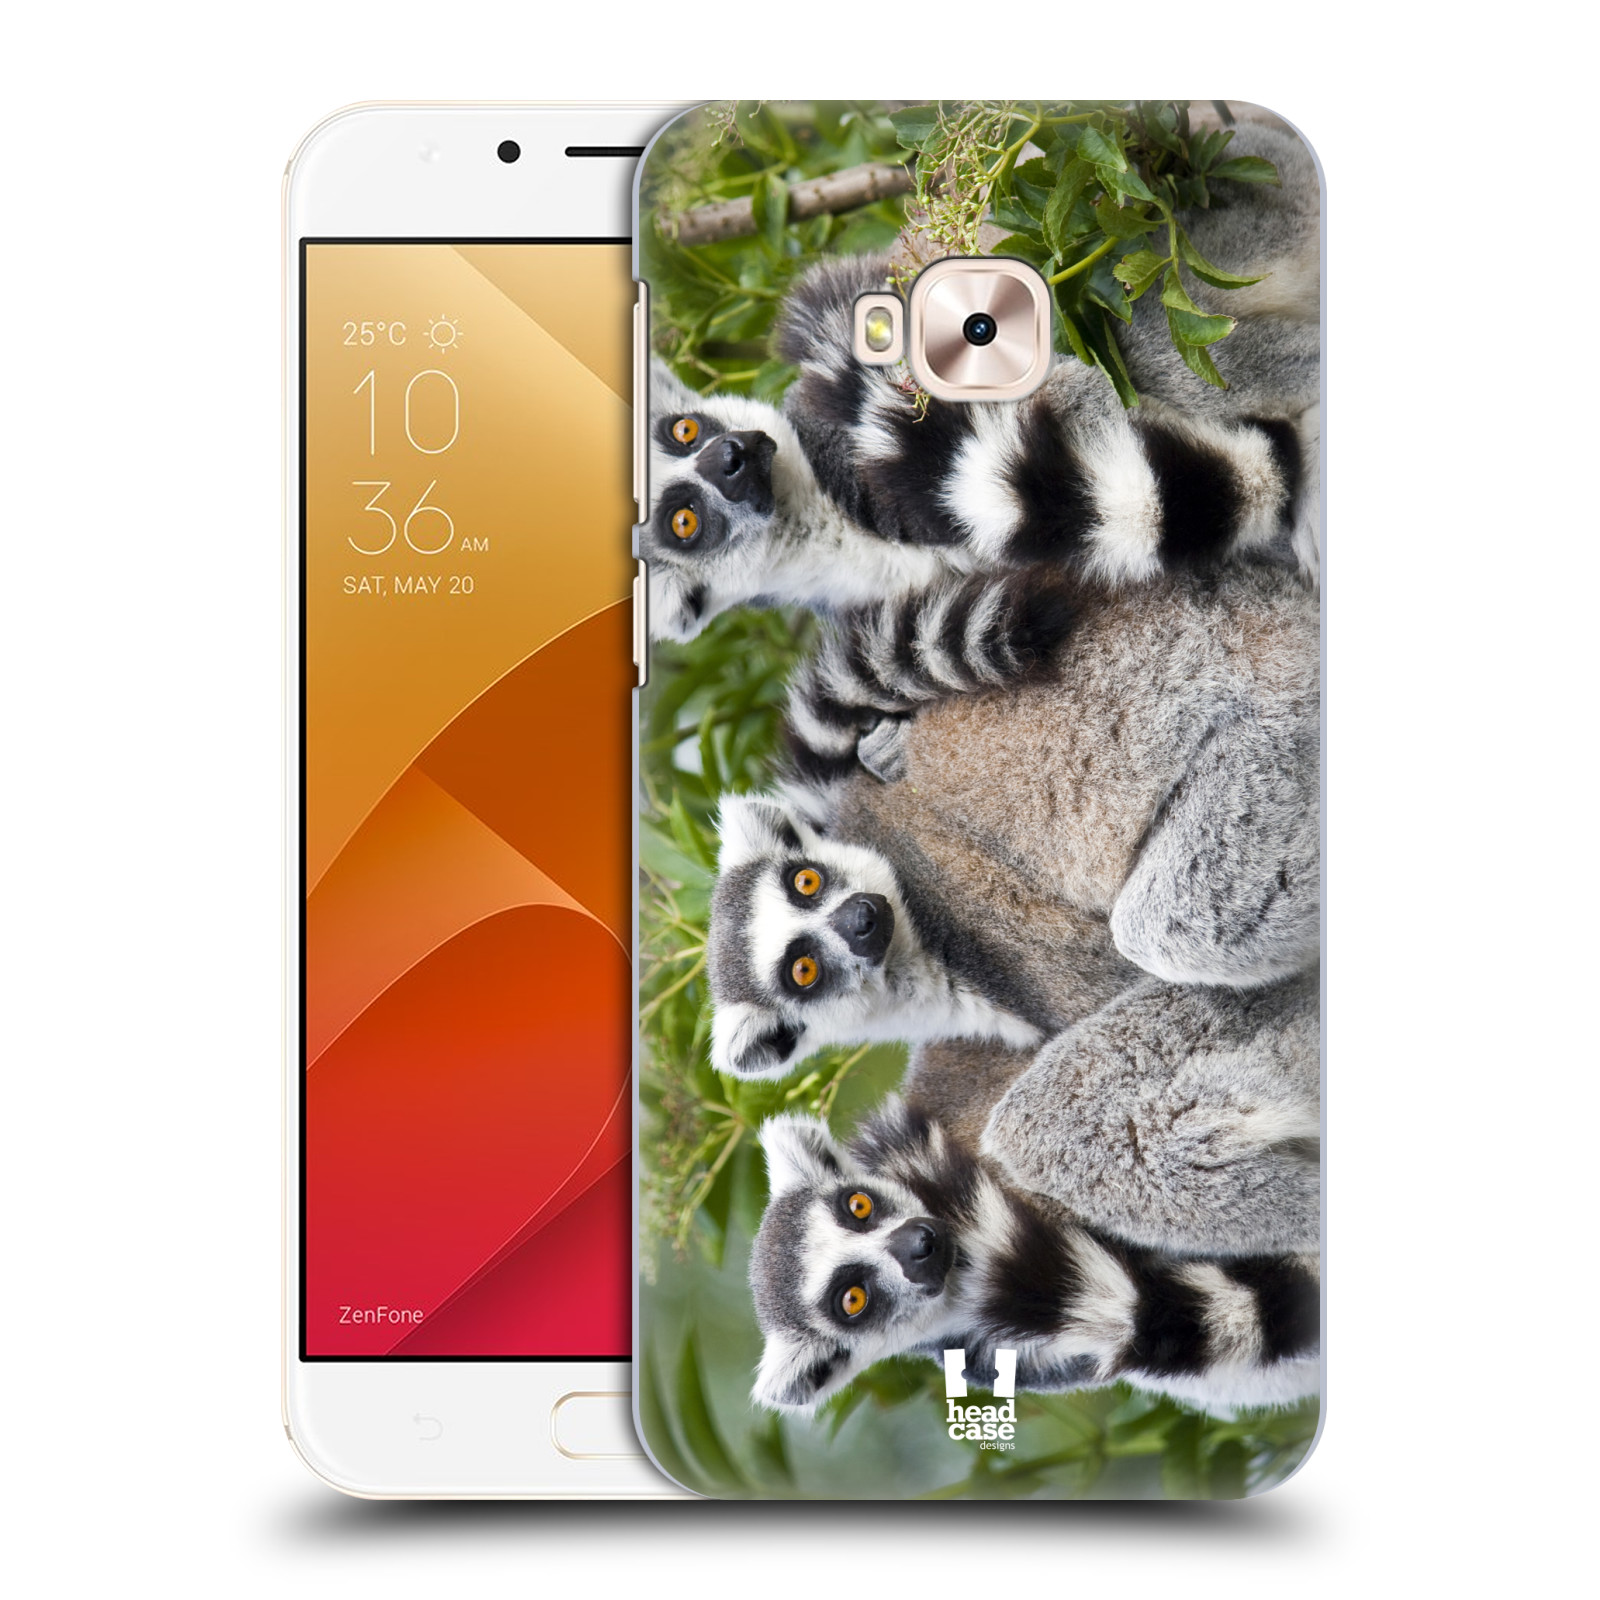 HEAD CASE plastový obal na mobil Asus Zenfone 4 Selfie Pro ZD552KL vzor slavná zvířata foto lemur